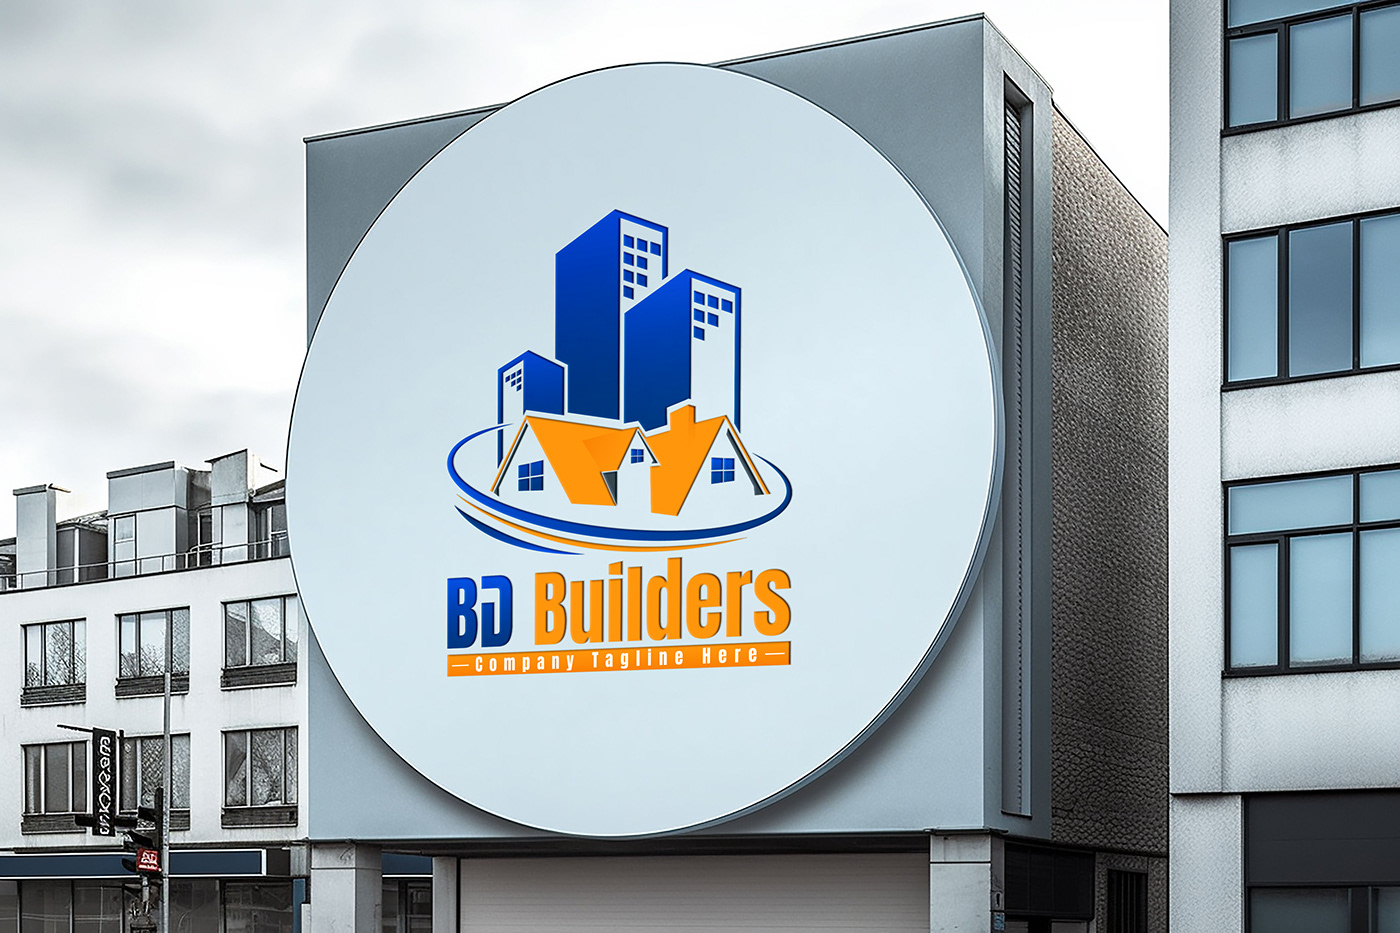 Logo Design building builders logo construction brand identity branding  Brand Design identity logos construccion